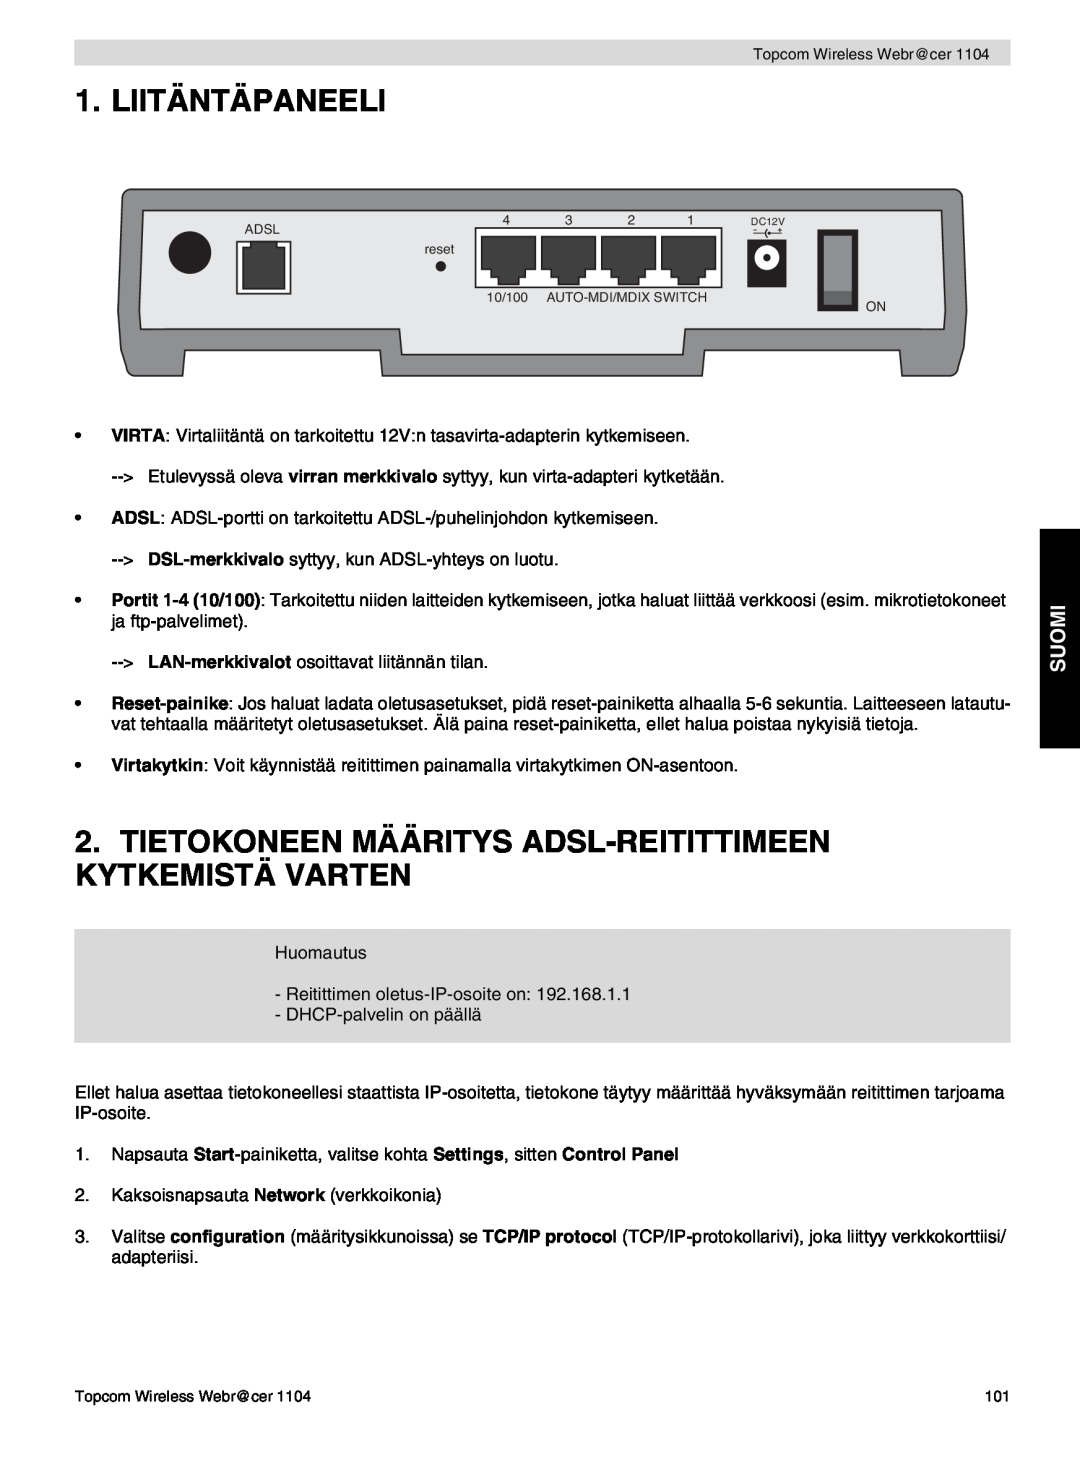 Topcom 1104 manual do utilizador Liitäntäpaneeli, Tietokoneen Määritys Adsl-Reitittimeen Kytkemistä Varten, Suomi 